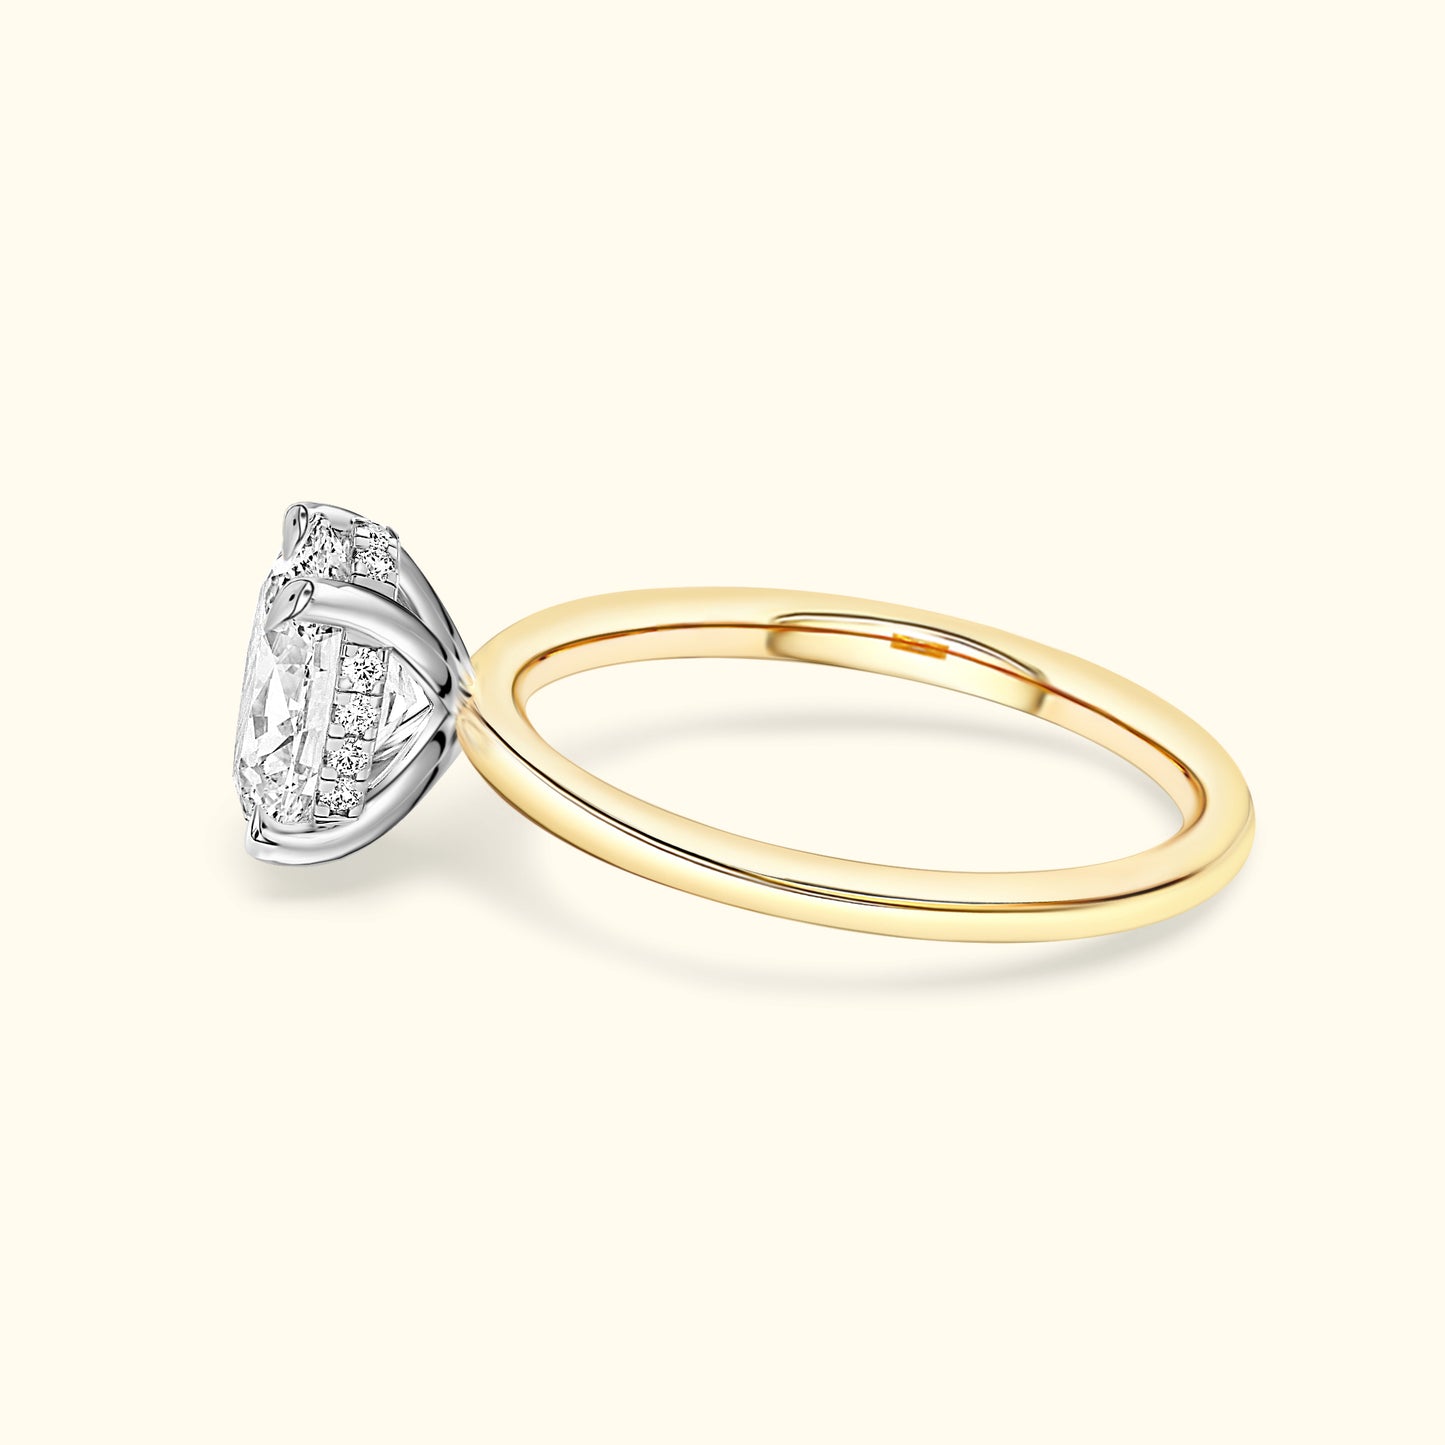 'Jess' Ring with 3.21ct Round Diamond